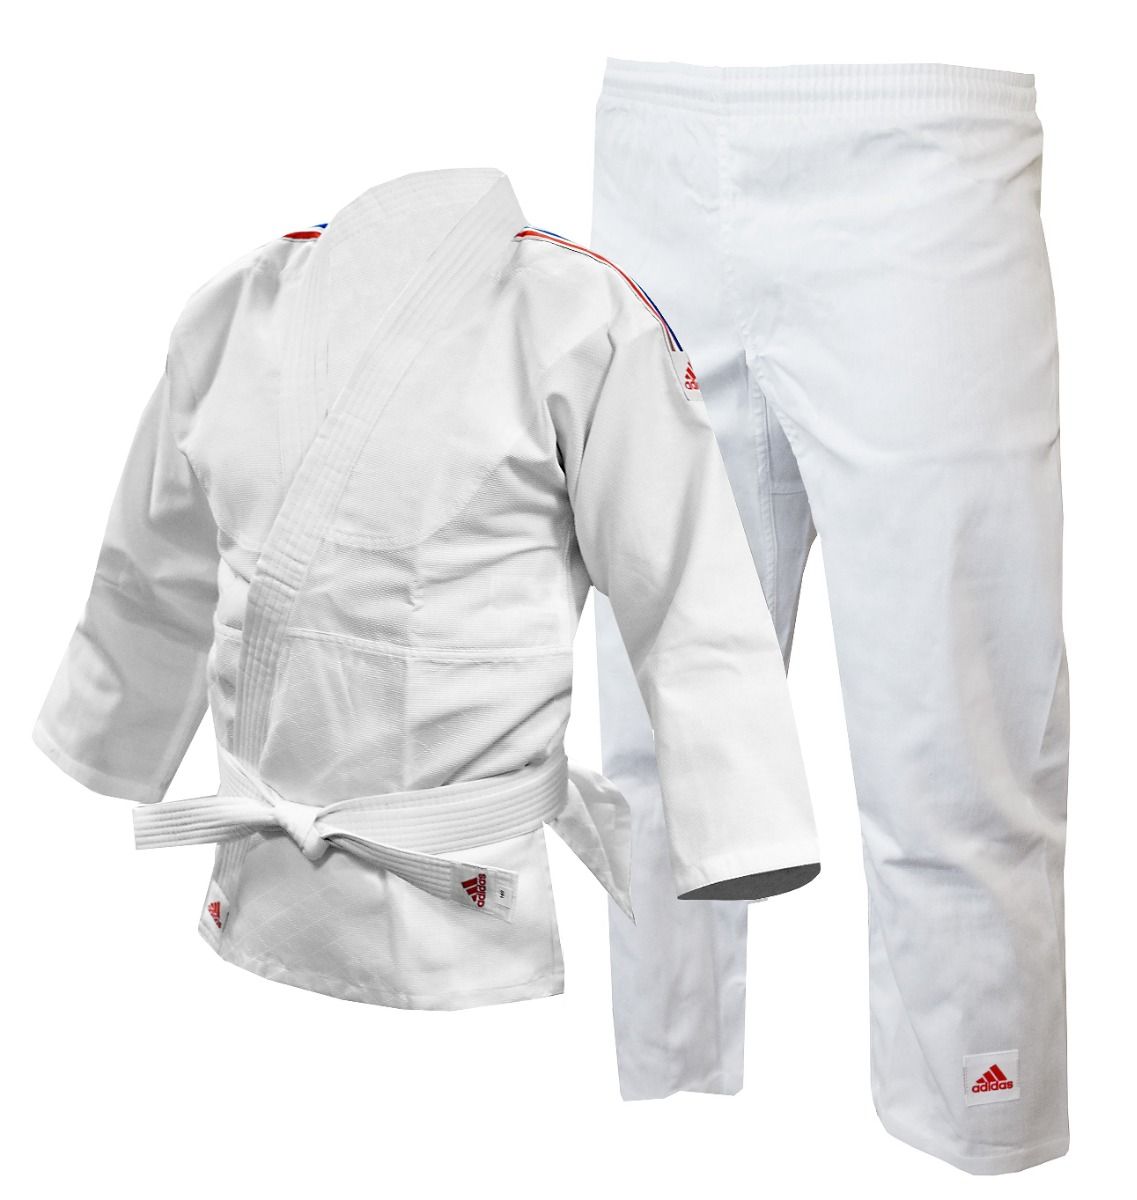 Adidas GB Stripes Kids Judo Uniform - White - Click Image to Close